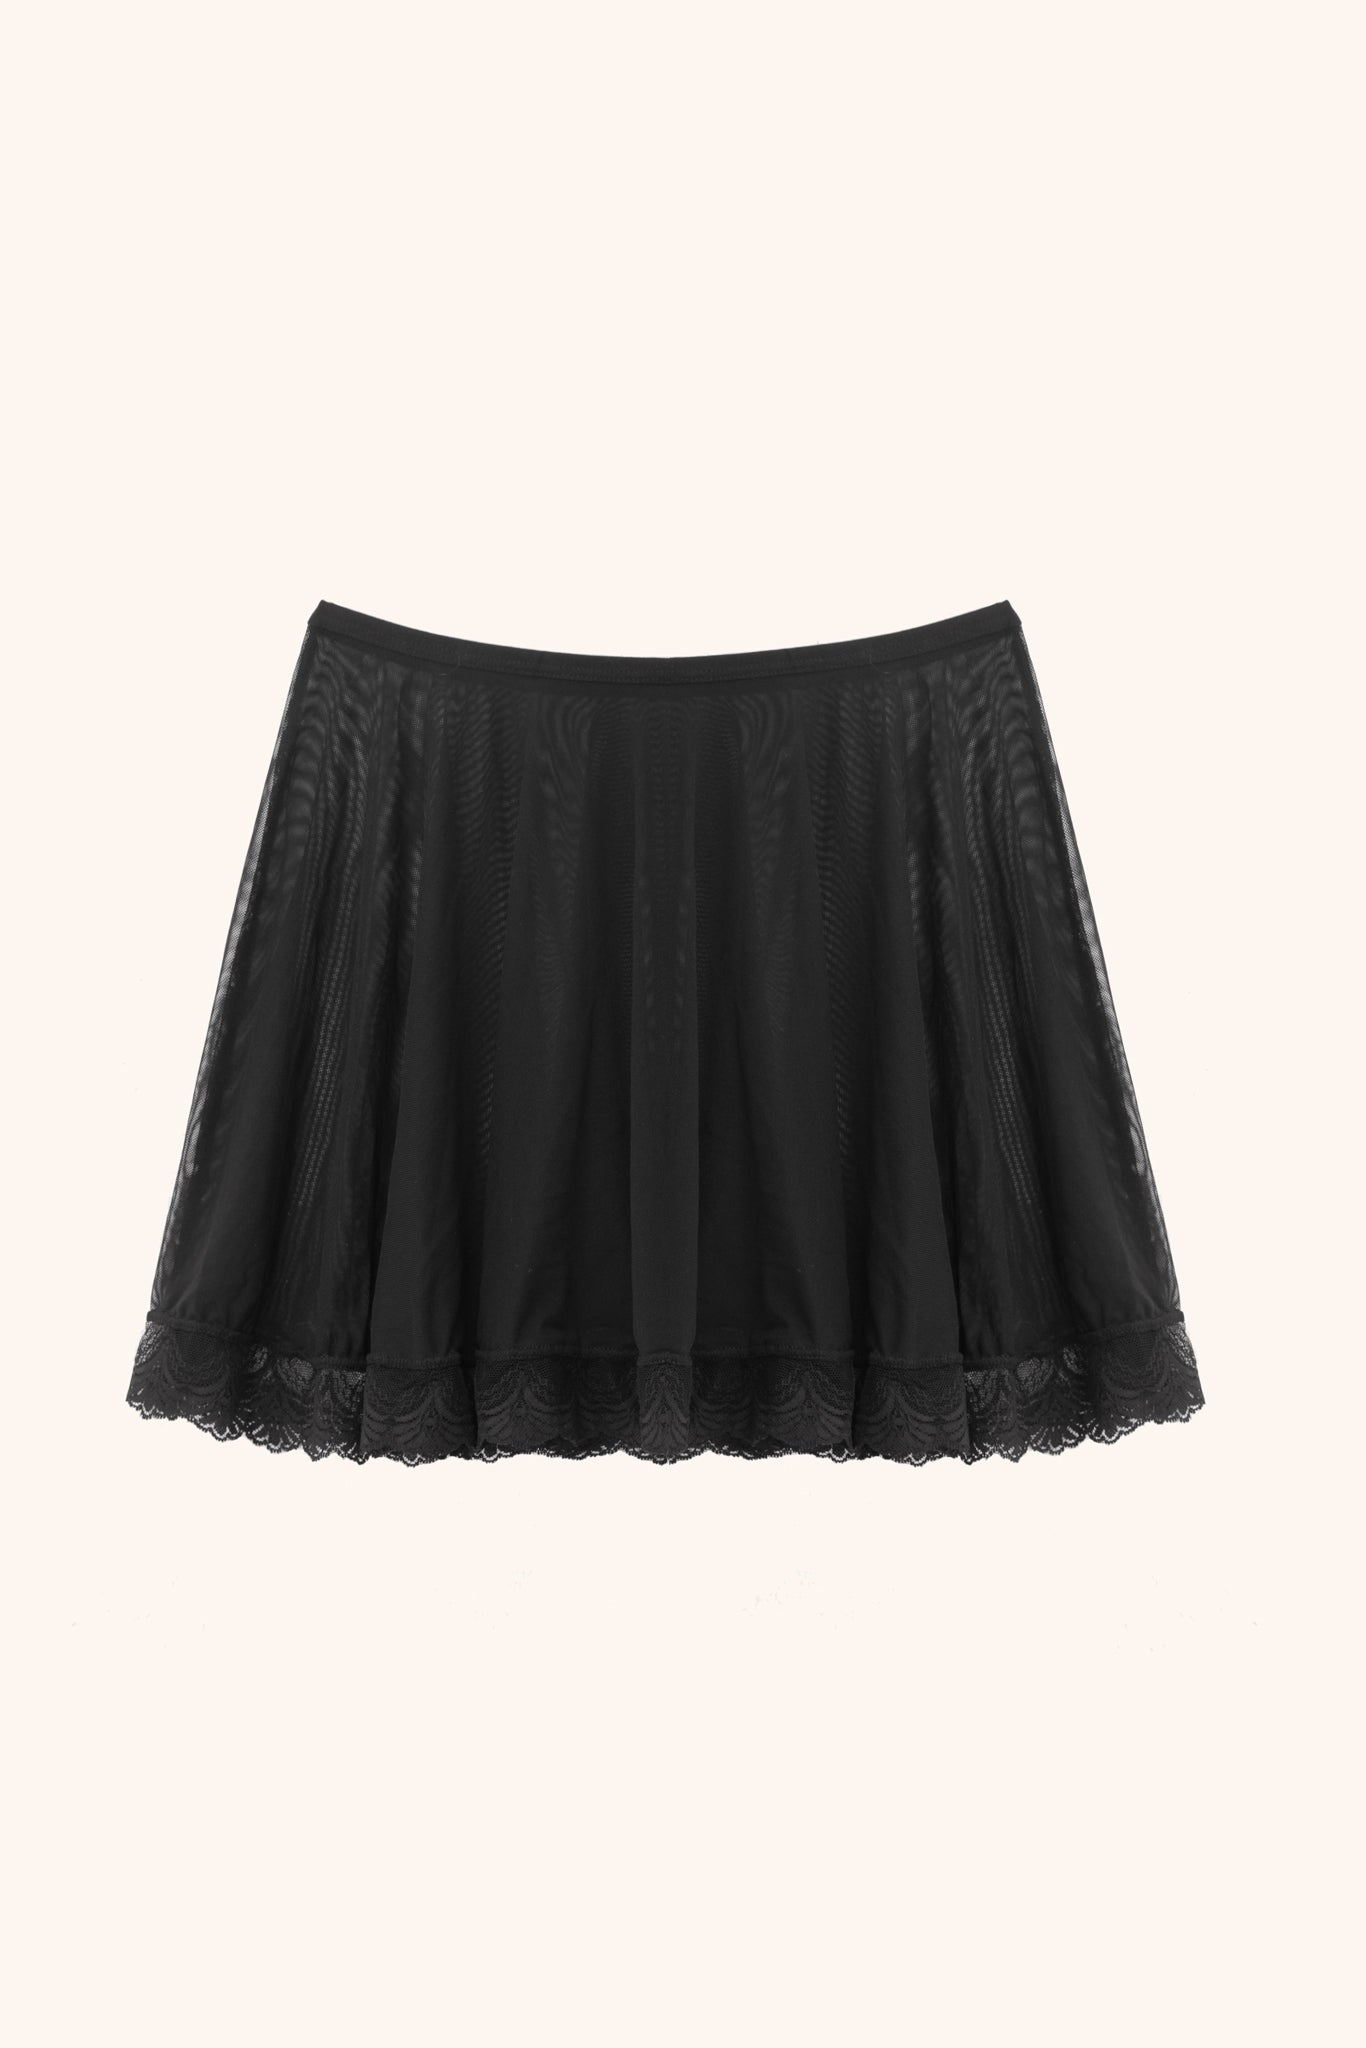 Polina mesh skirt